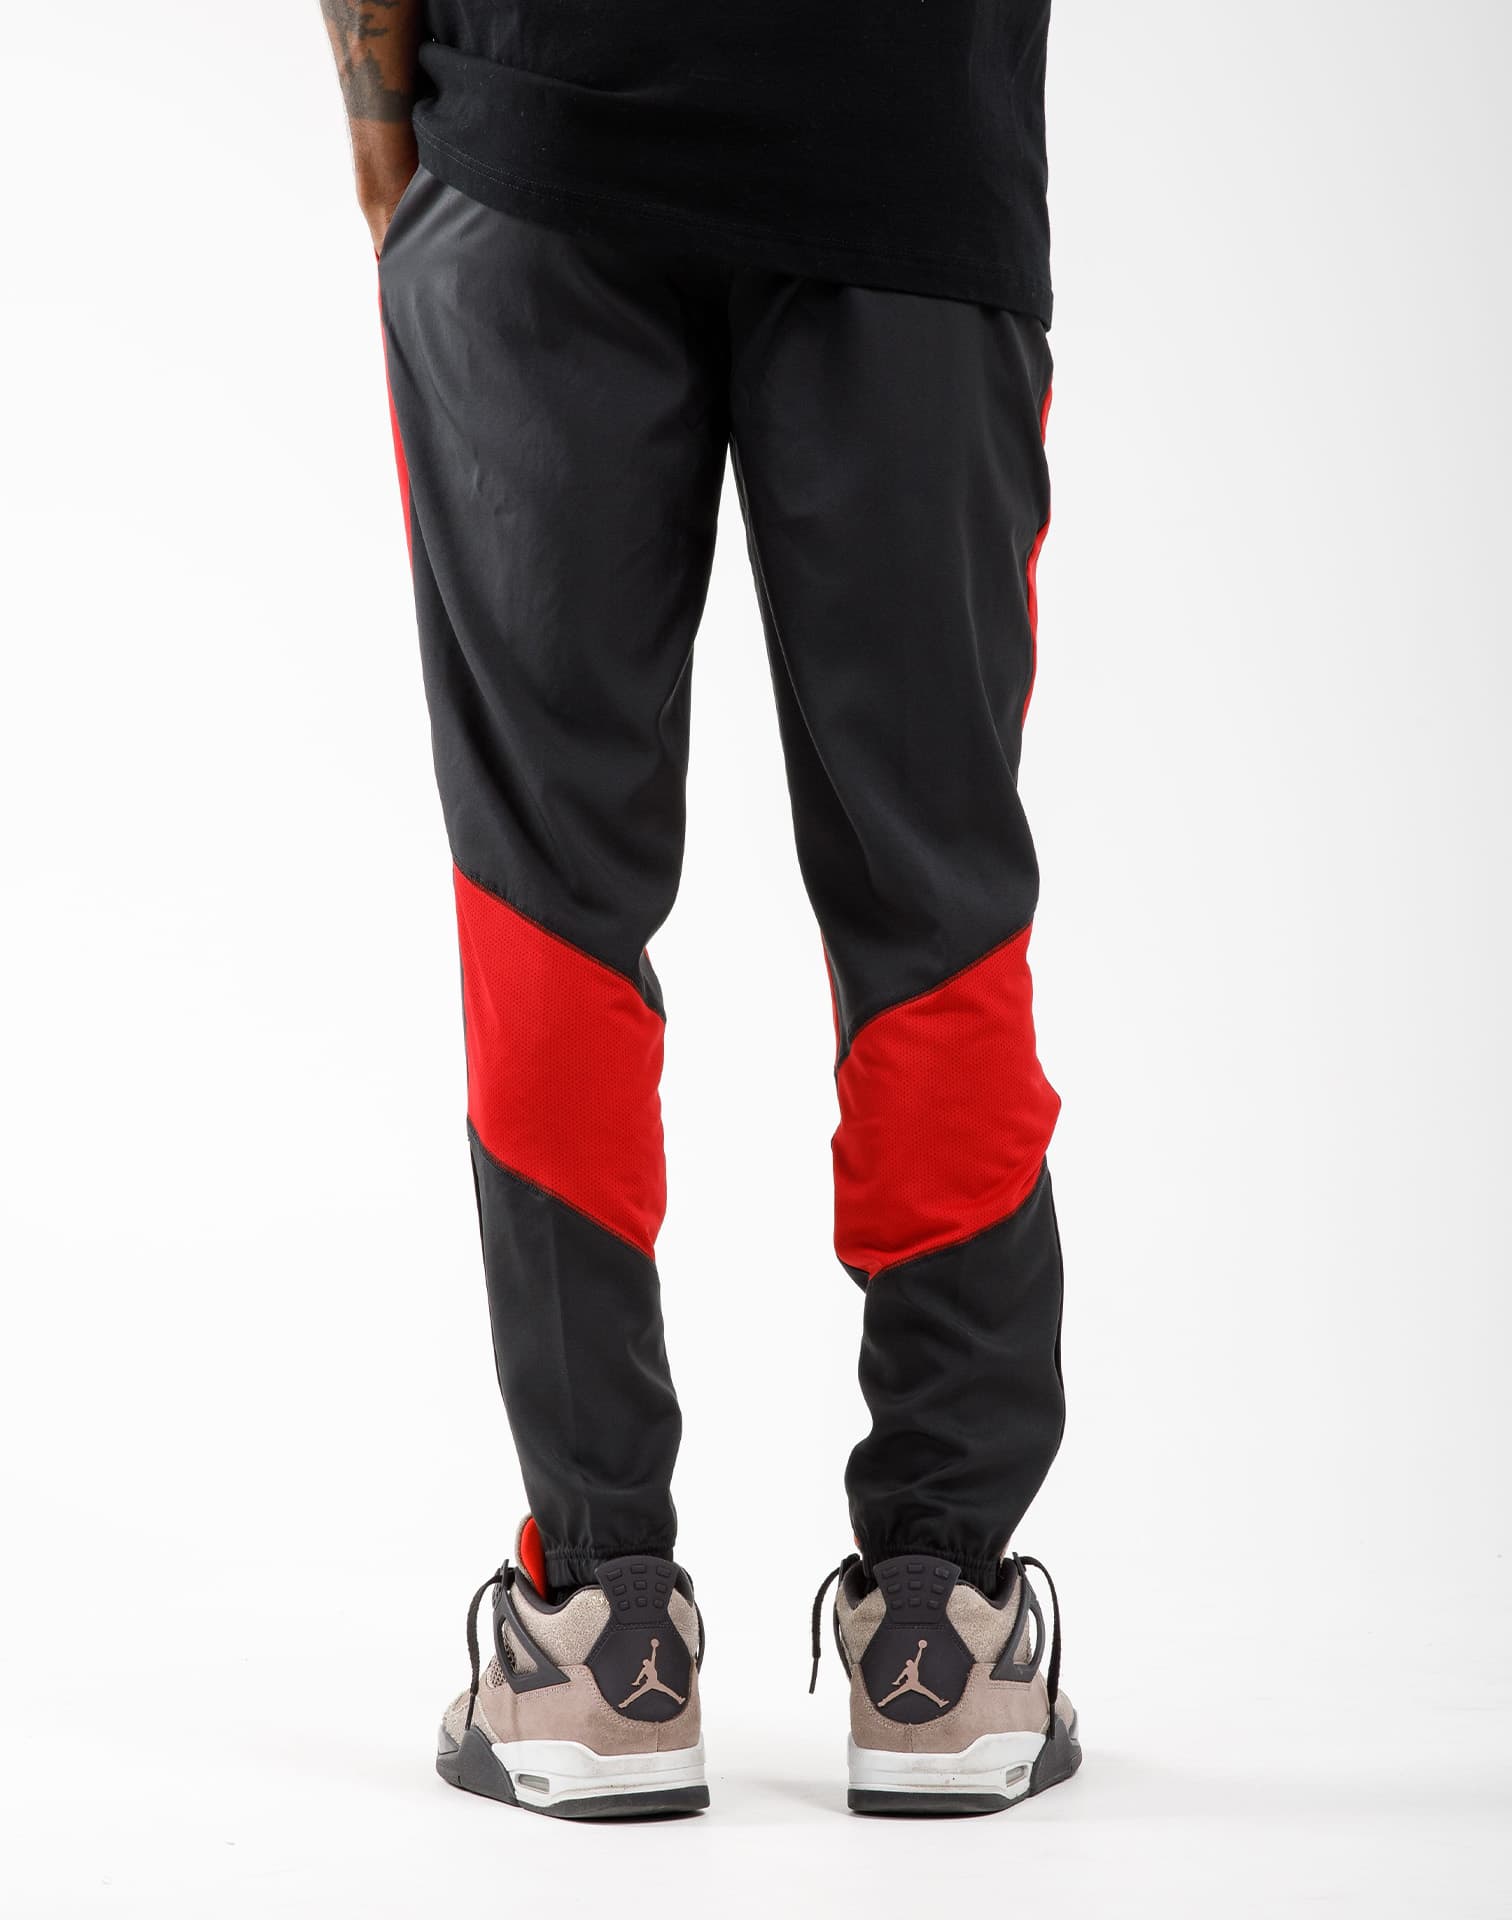 Nike Air Jordan Dri-Fit Men's Leggings - Black, Size L for sale